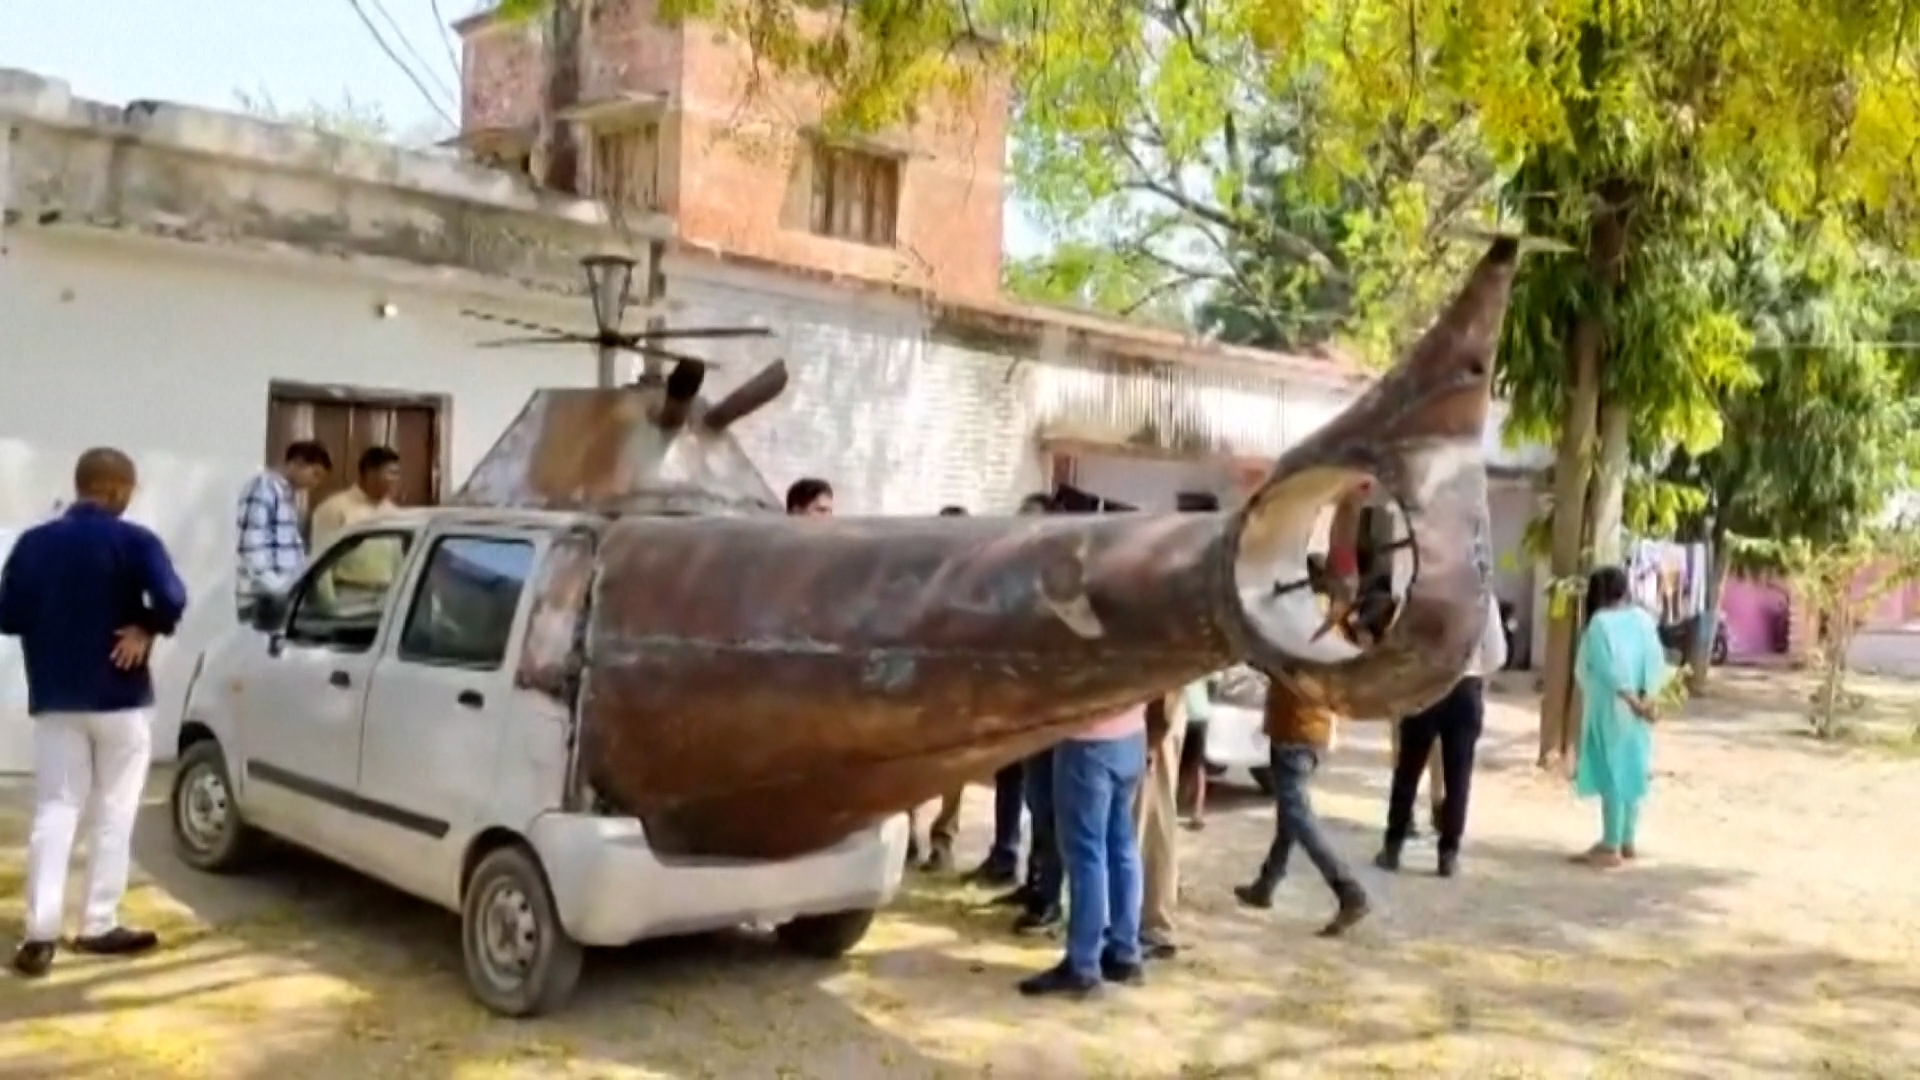 Βίντεο: Ινδοί μετέτρεψαν αμάξι σε ελικόπτερο για να το νοικιάζουν σε γάμους – Η αστυνομία το κατάσχεσε